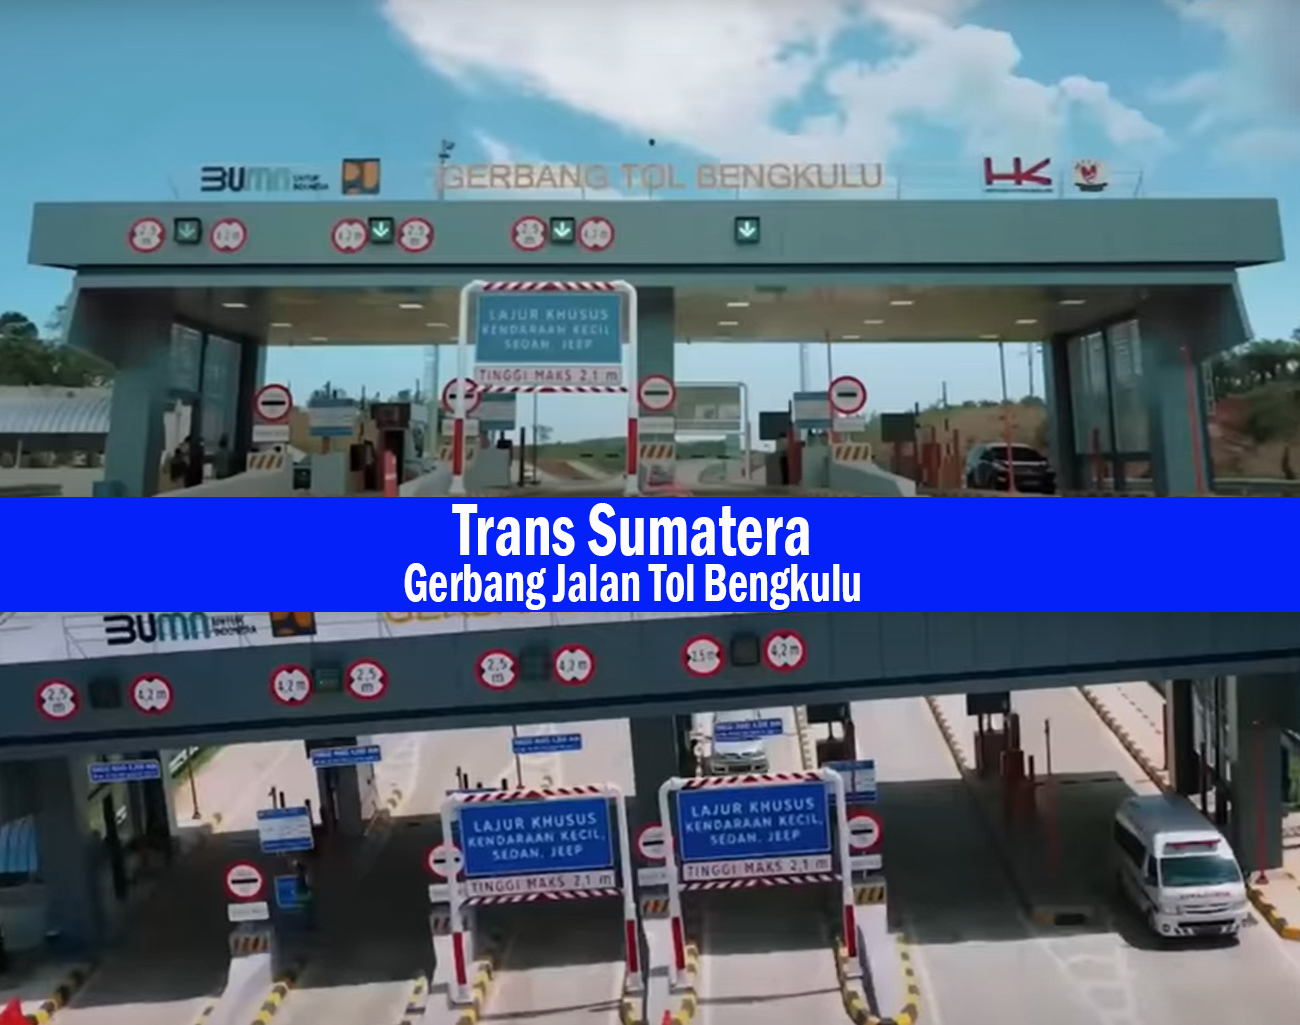 Hutama Karya Melakukan Pembangunan Jalan Tol Secara Bertahap untuk Menyambungkan Ruas Trans Sumatera